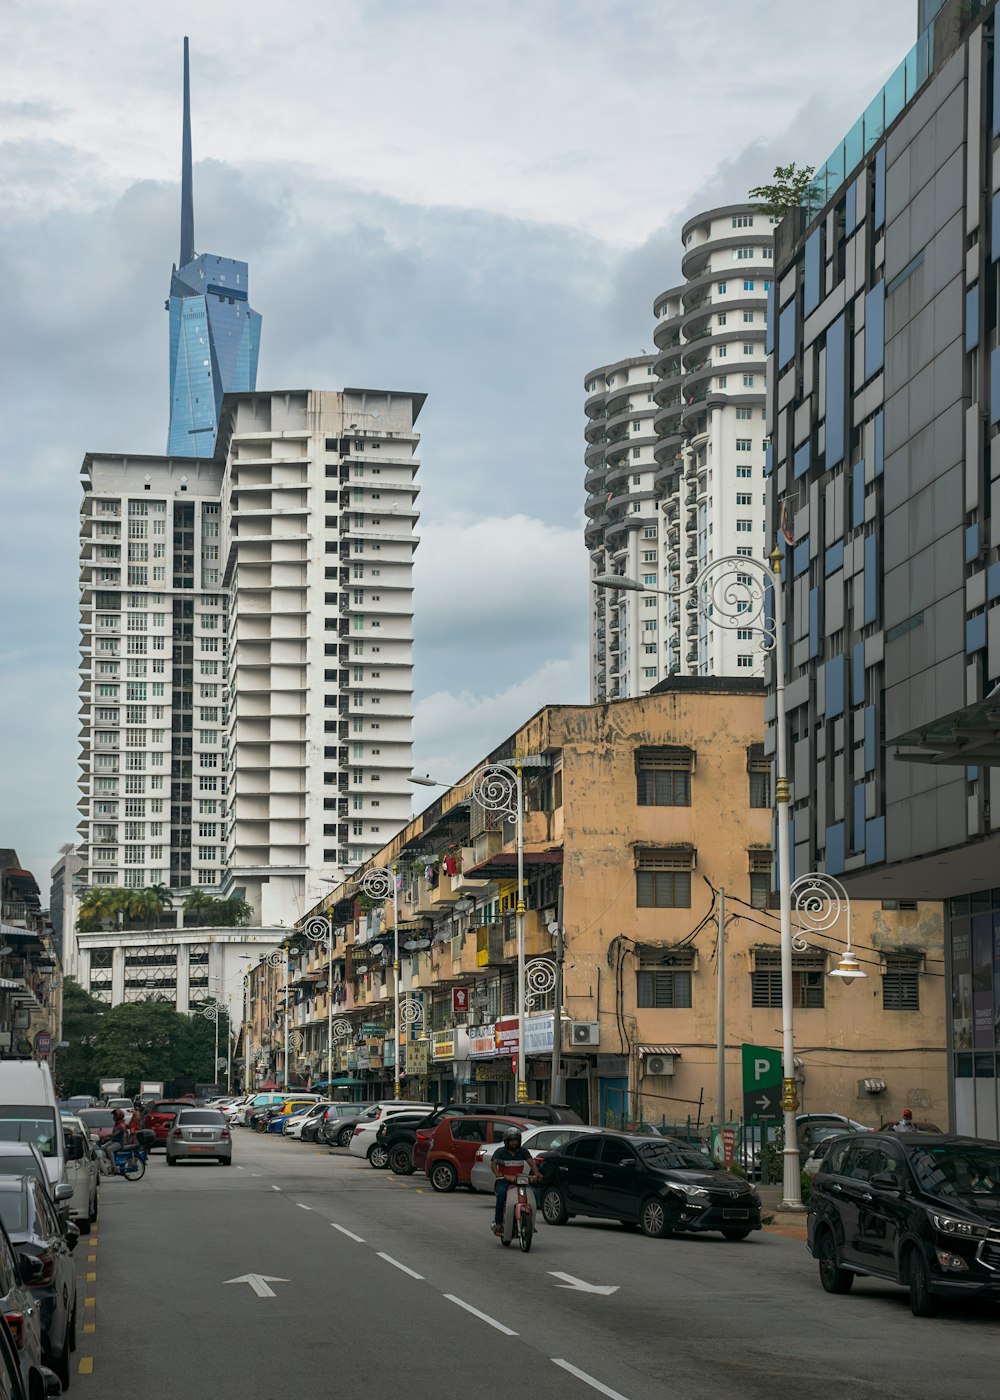 Une rue de la ville remplie de nombreux immeubles de grande hauteur